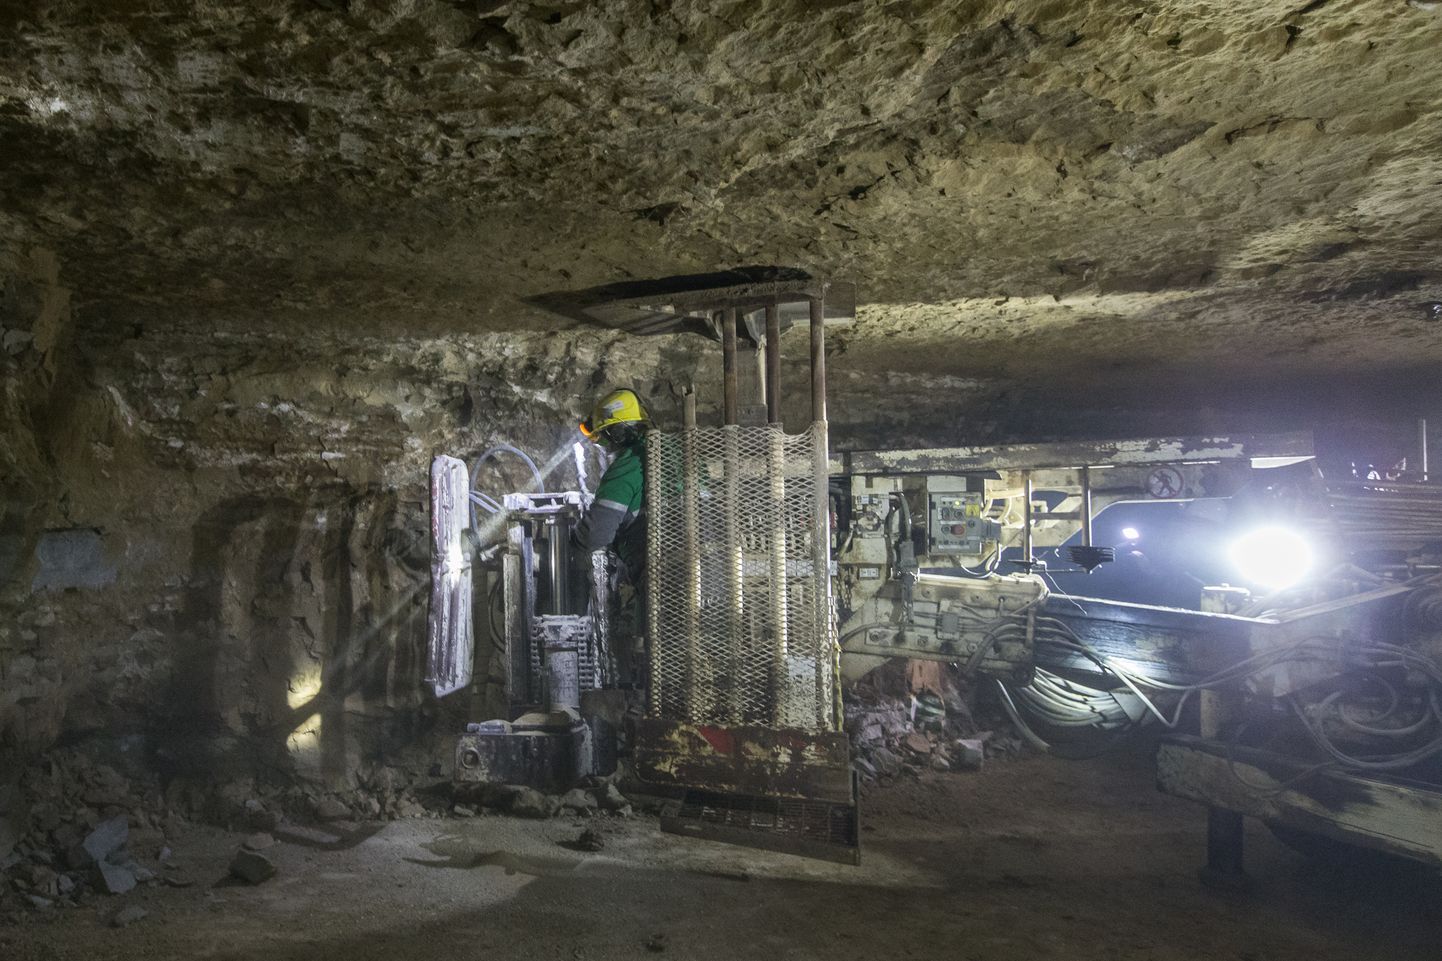 Aastatega on Estonia kaevanduses tehnoloogia nüüdisaegsemaks muutunud, kuid moodsate masinate kasutuselevõtt pole siiski riske olematuks teinud.